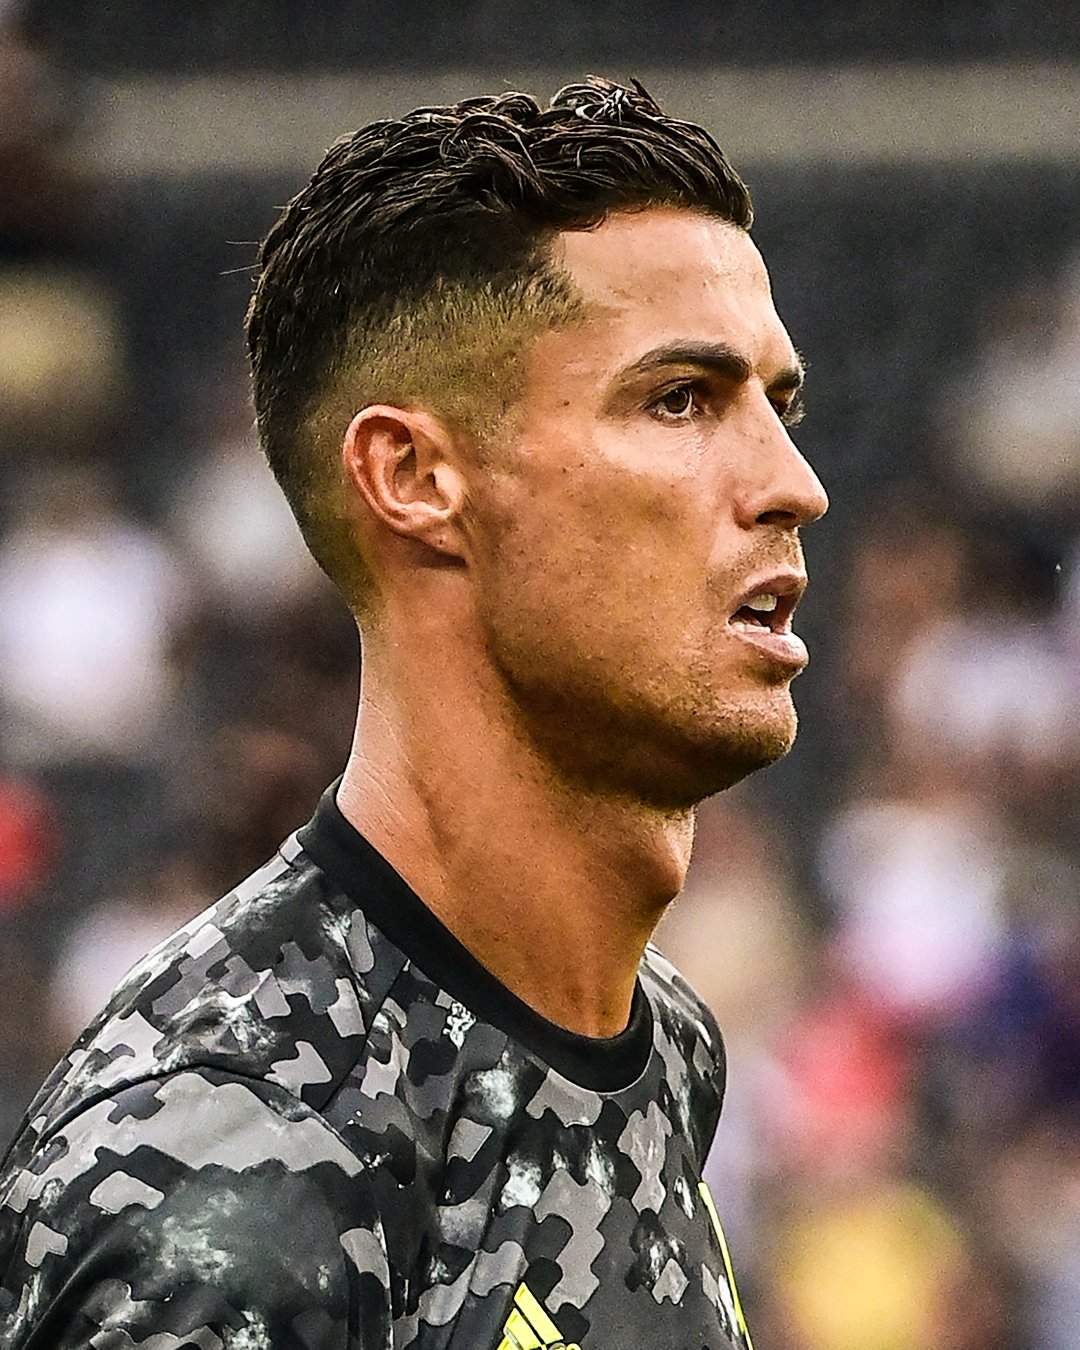 Cristiano Ronaldo's Looks, Enhanced by Surgery?